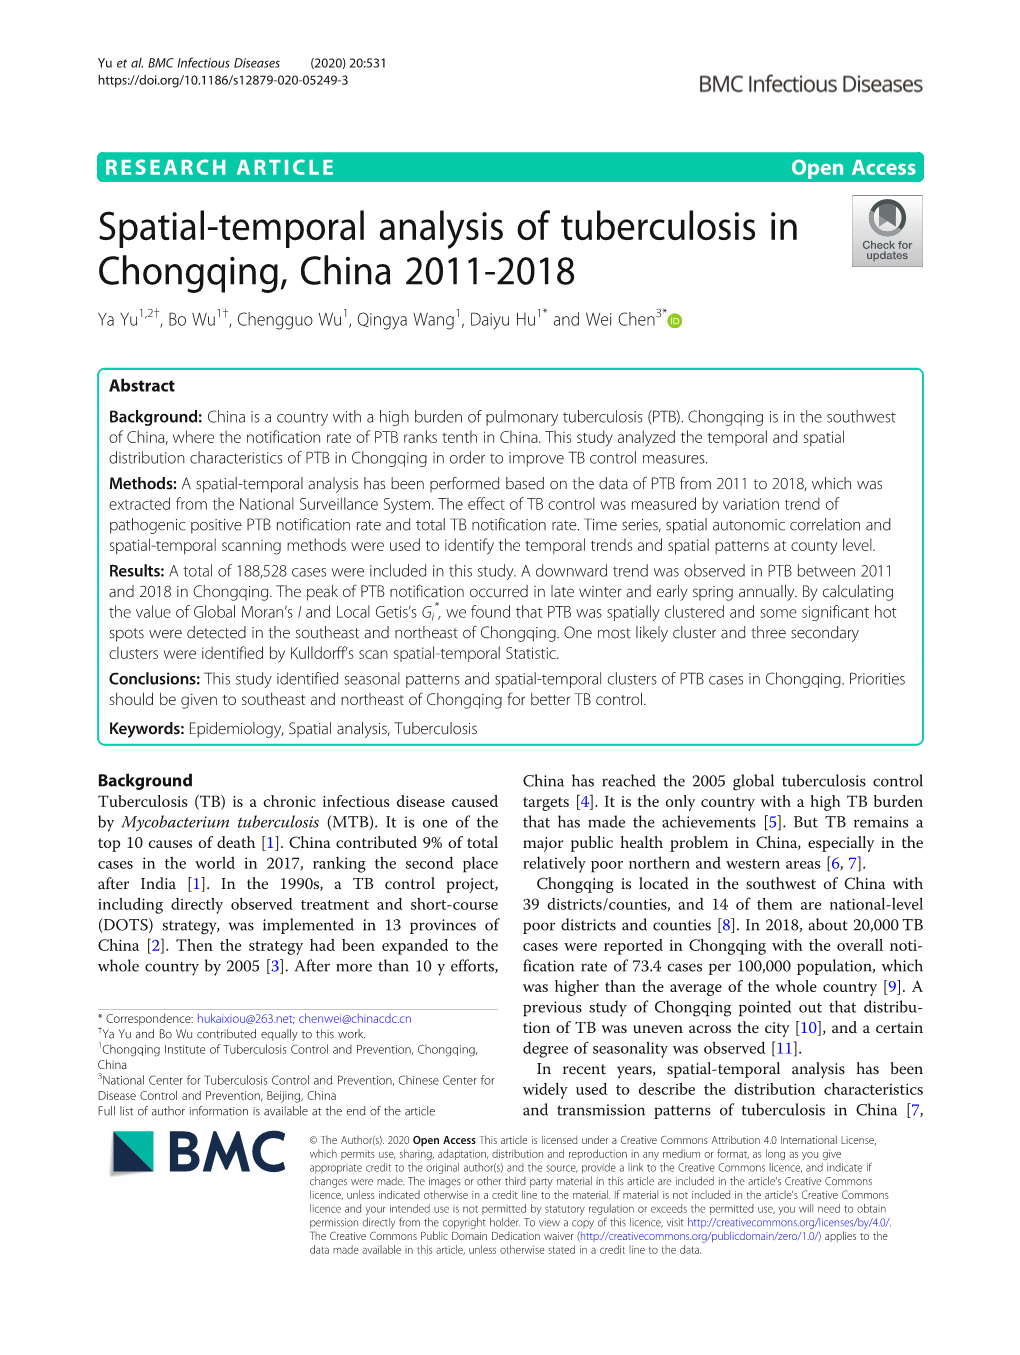 Spatial-Temporal Analysis of Tuberculosis in Chongqing, China 2011-2018 Ya Yu1,2†,Bowu1†, Chengguo Wu1, Qingya Wang1, Daiyu Hu1* and Wei Chen3*